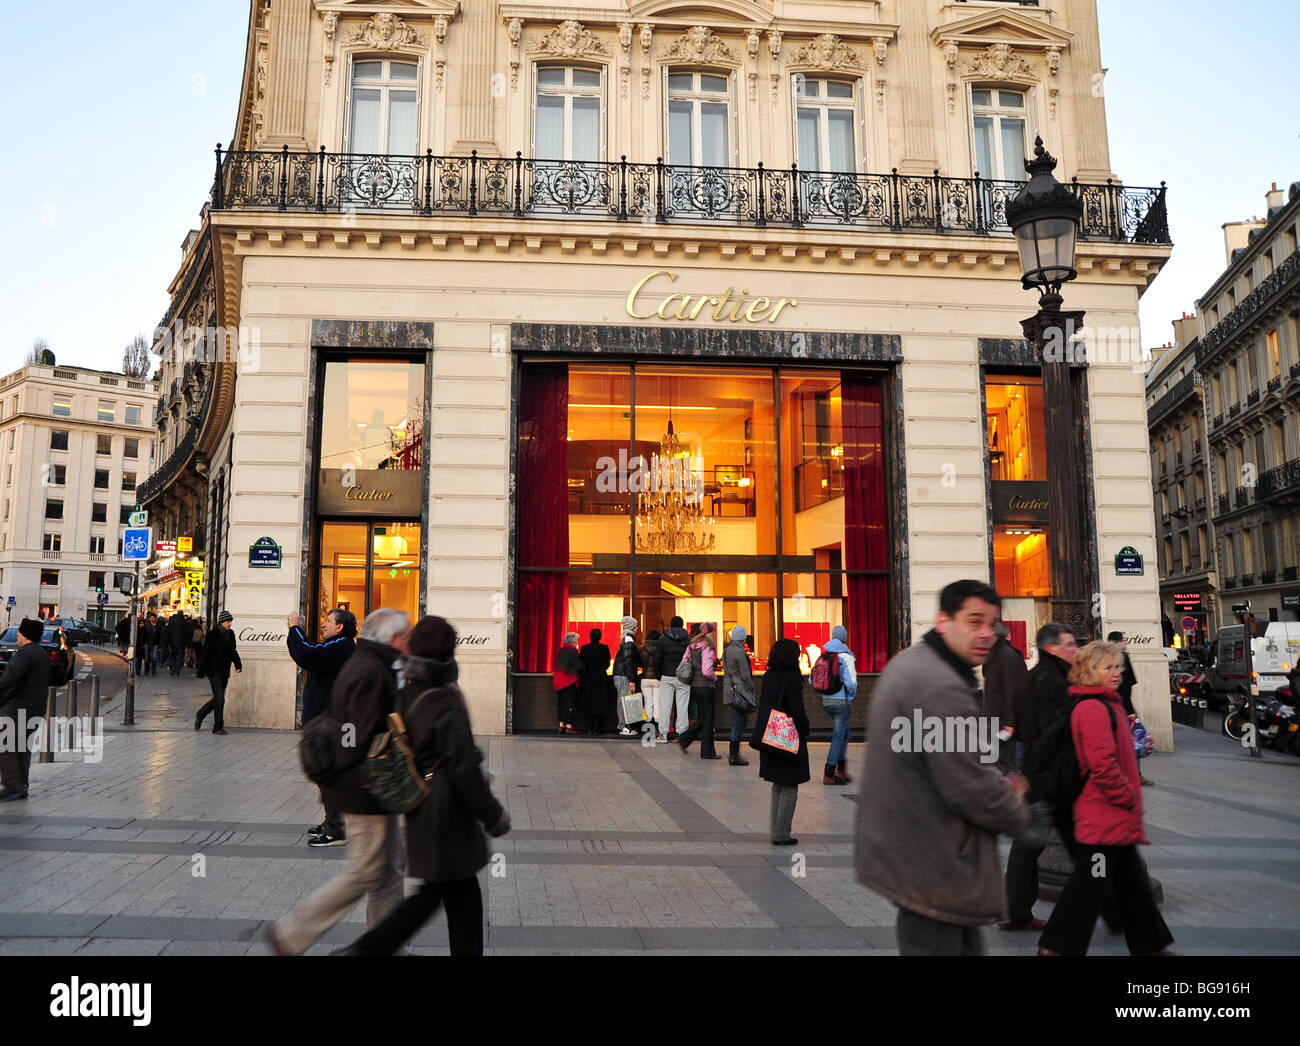 cartier boutique in paris